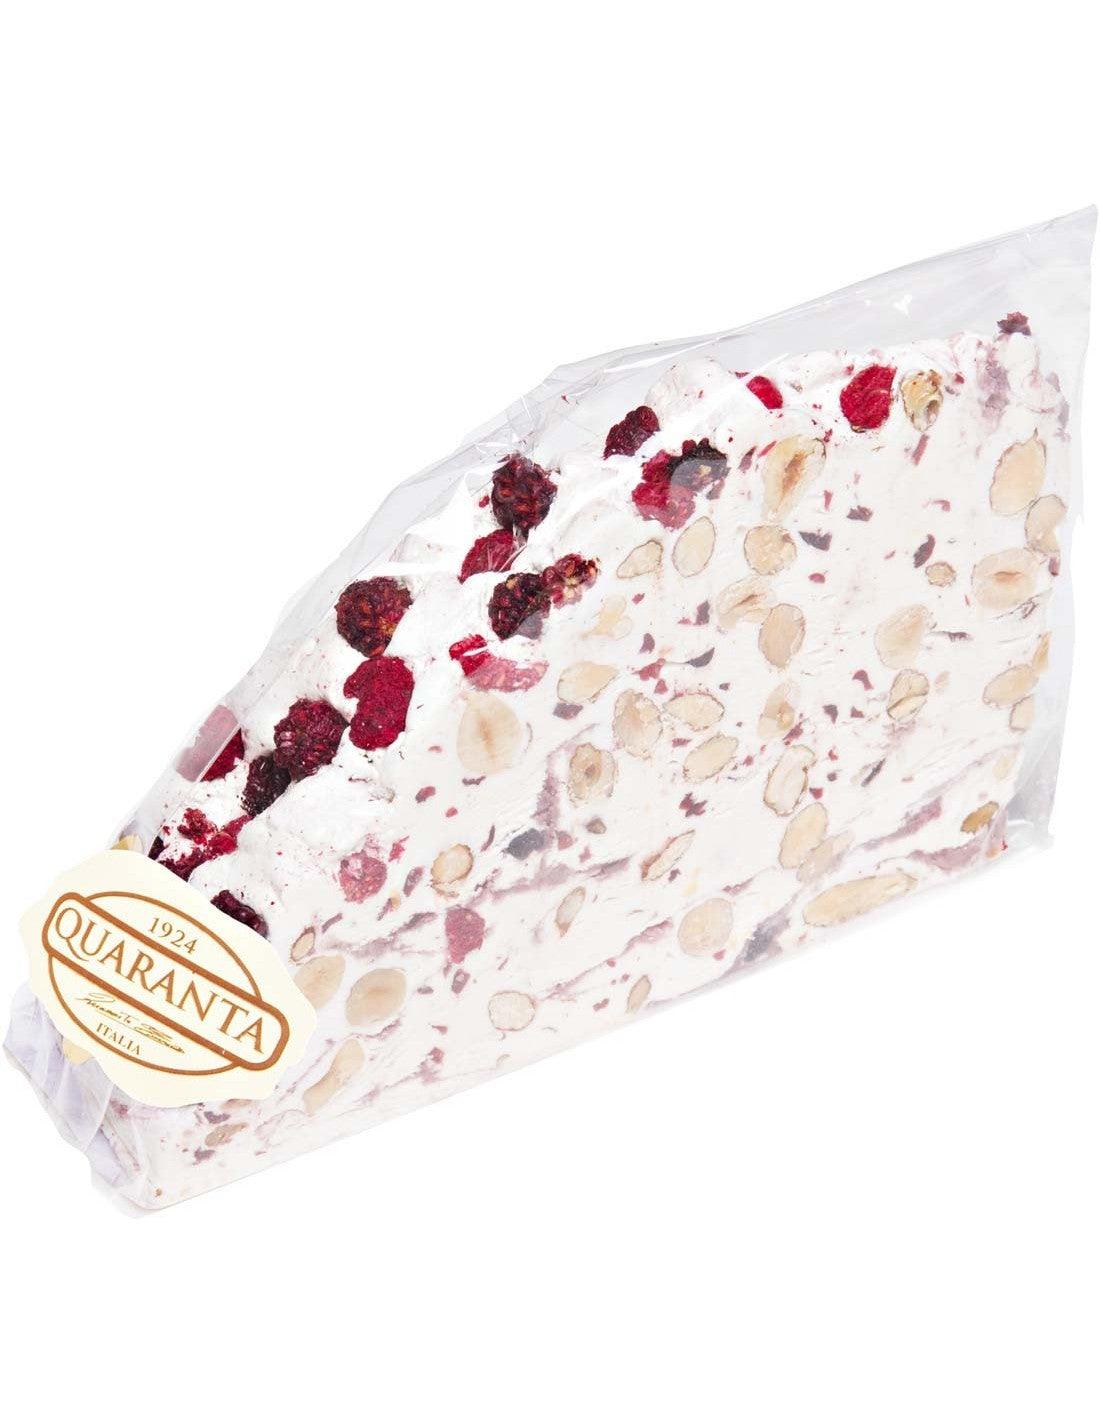 Quaranta Soft Torrone Cake Slice - Berries - Torrone Candy